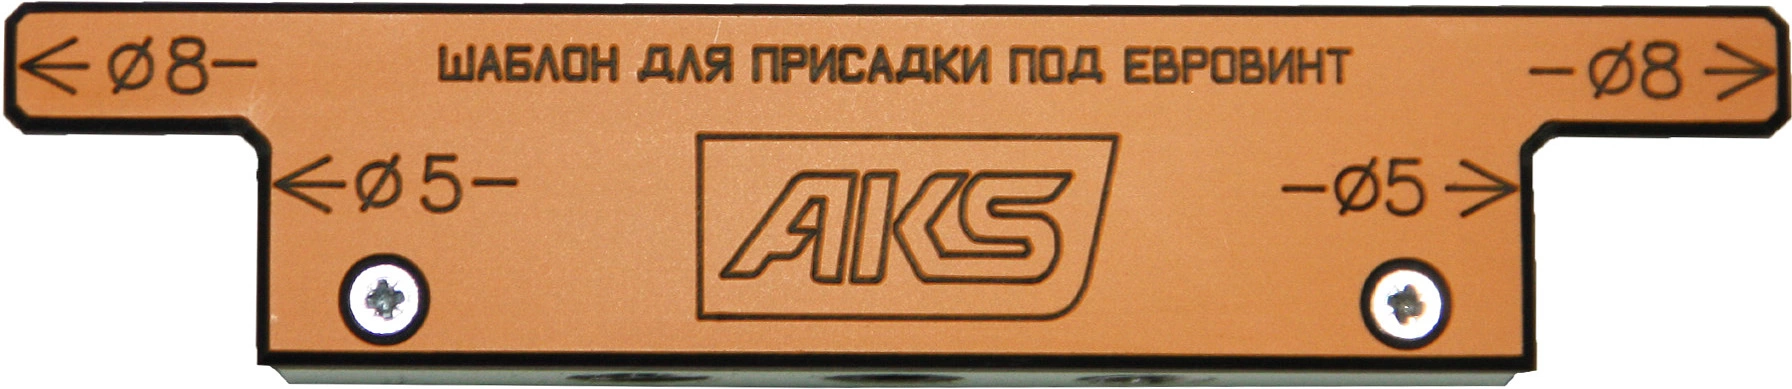 Шаблон для присадки под конфирмат AKS - фото 1